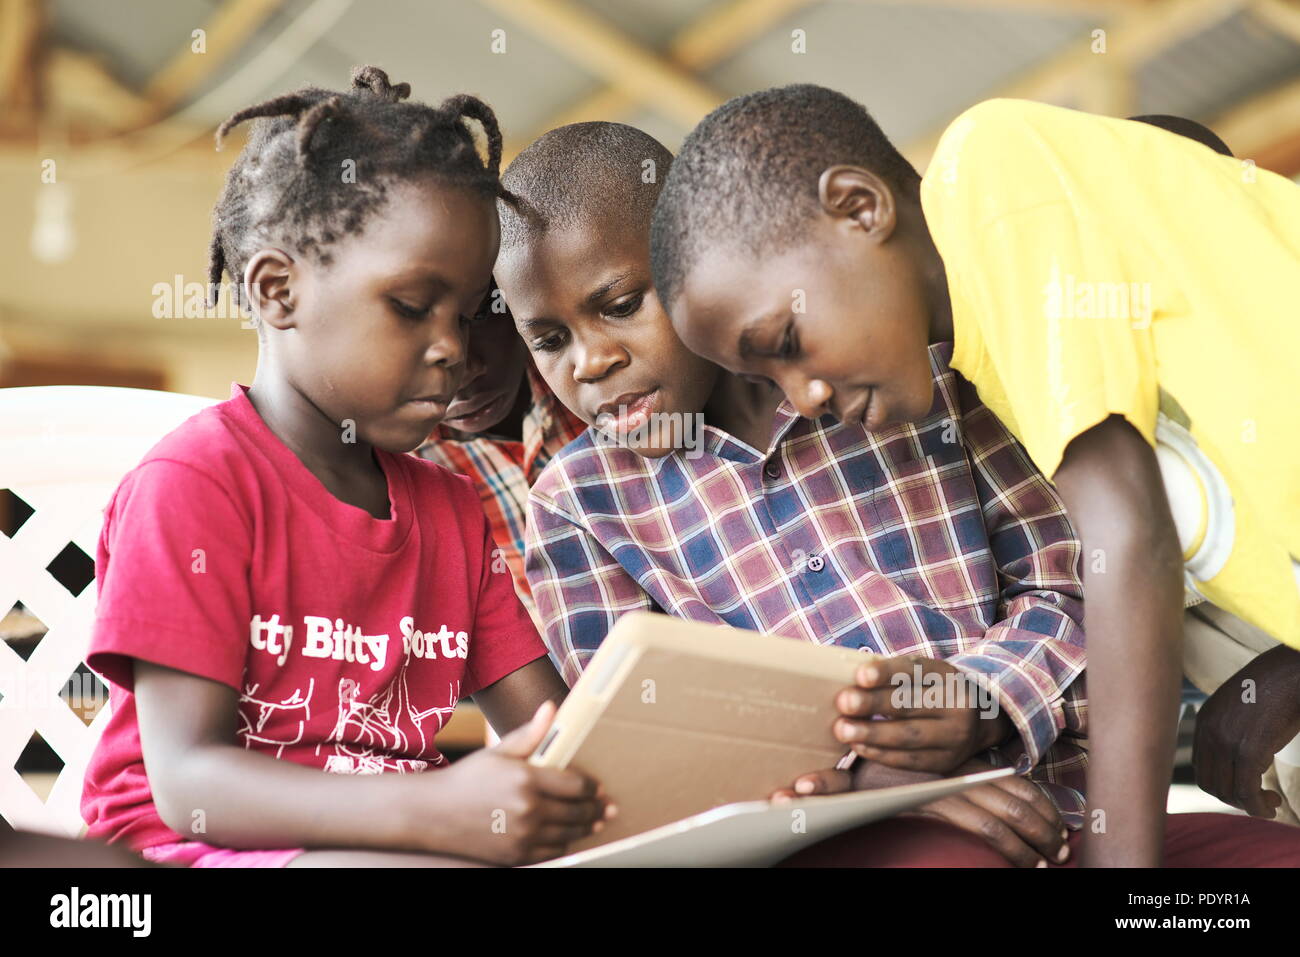 Un grupo de niños ugandeses jóvenes se reúnen en un grupo usando ropa brillante para usar UN IPAD de Apple por primera vez Foto de stock